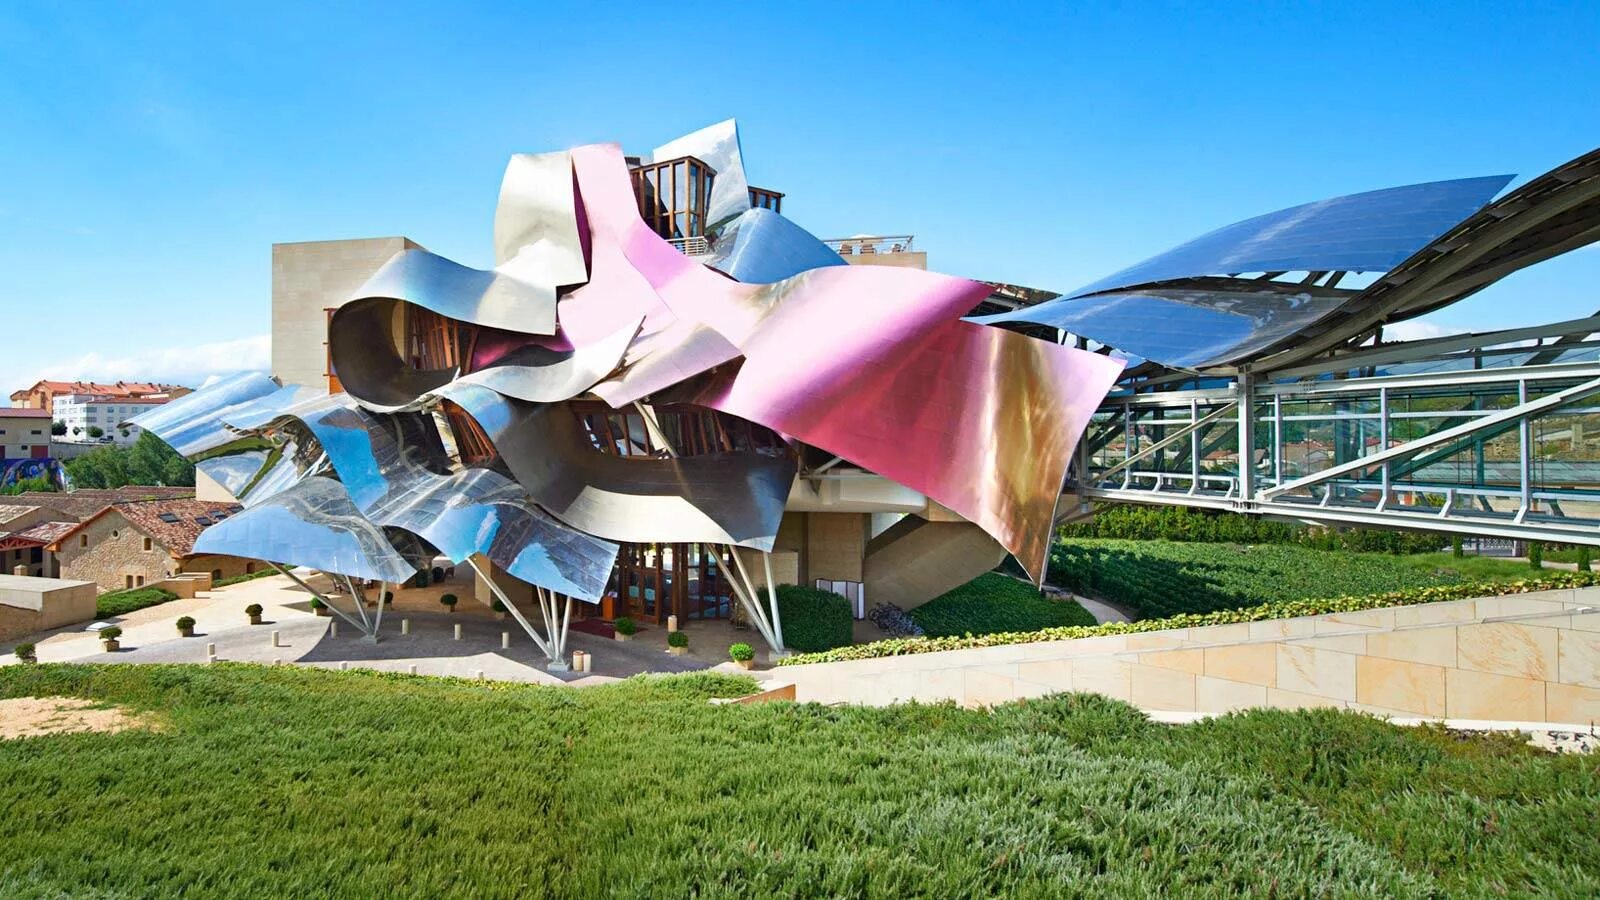 Отель Маркиз де Рискаль Испания. Отель Маркес де Рискаль Испания. Фрэнк Гери винодельня. Фрэнк Гери (Frank Gehry) - отель Riscal.